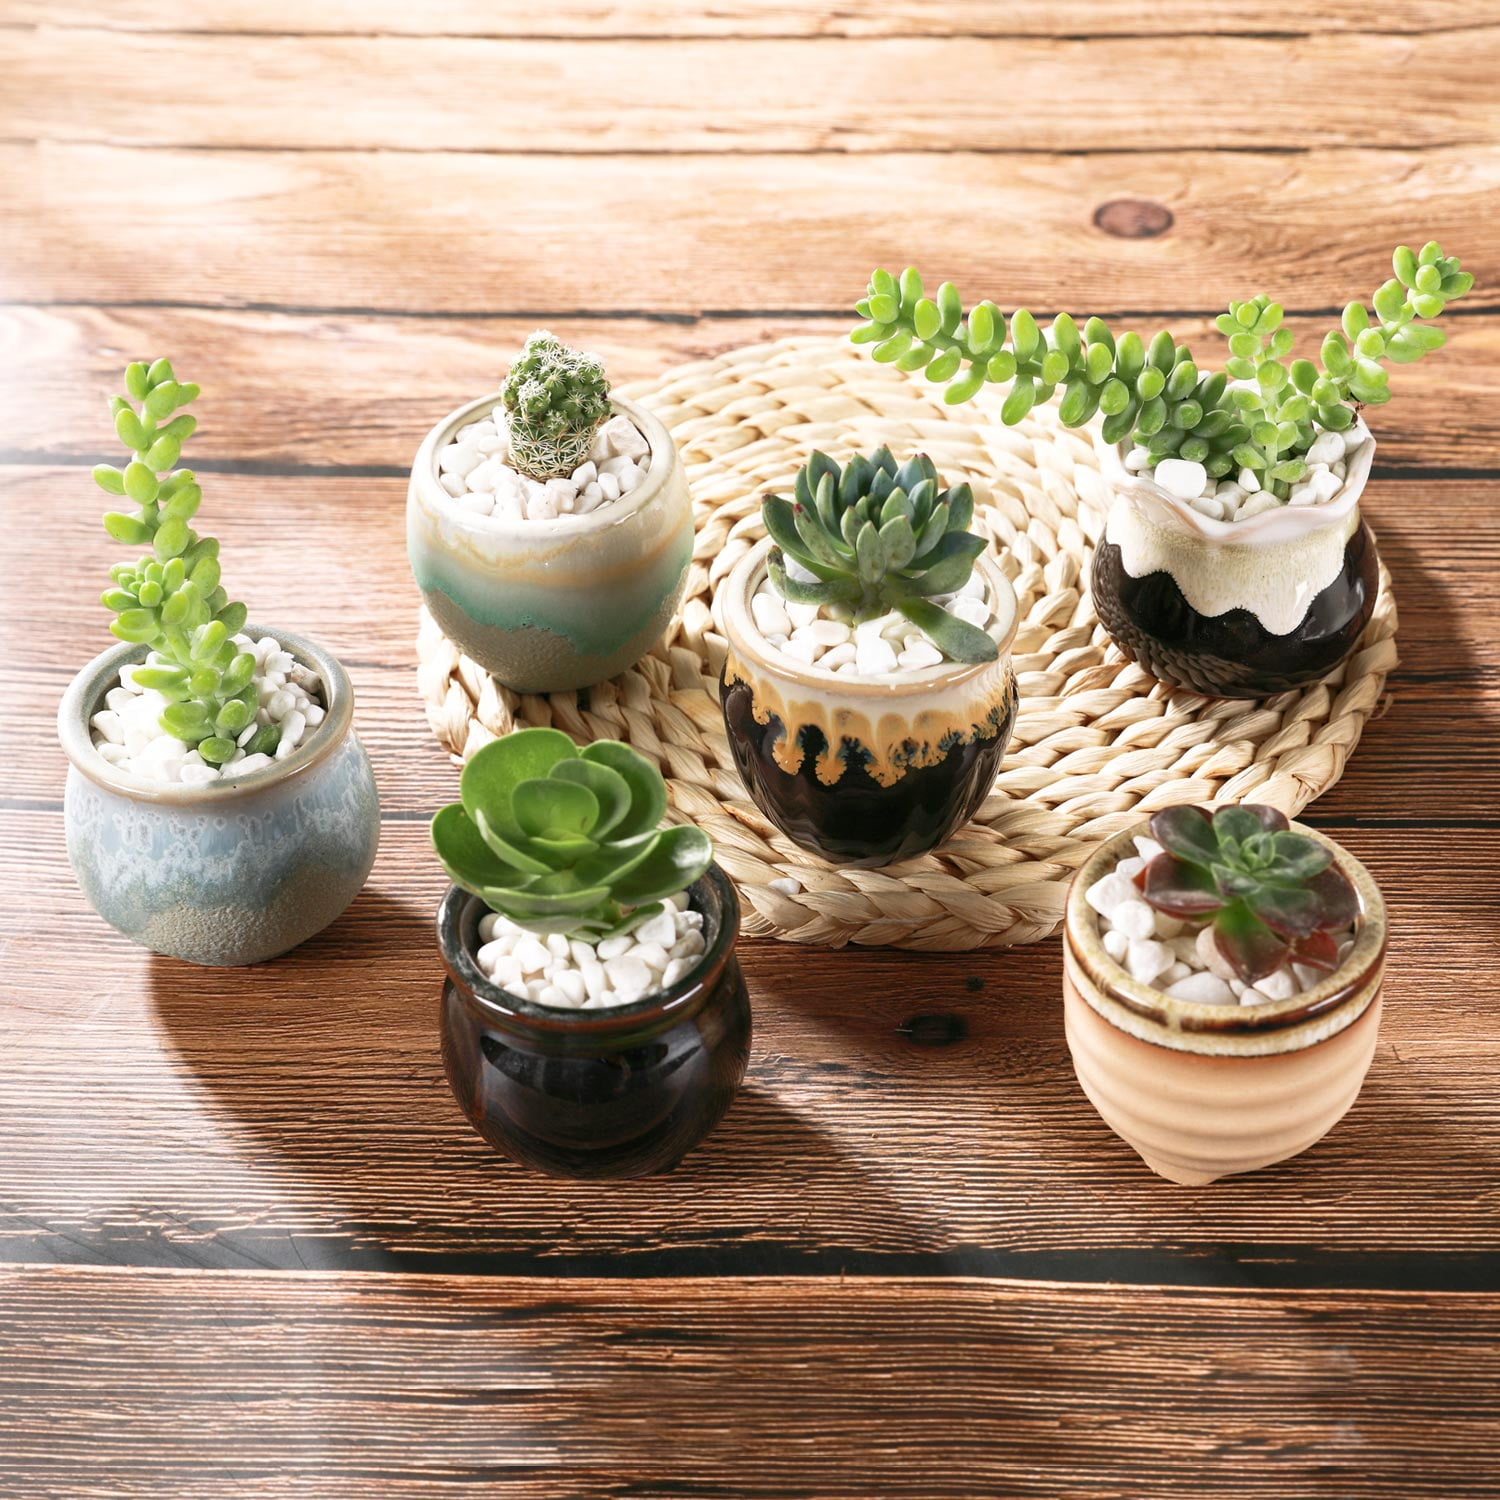 Small & Large Pot, Set Of 2 Flower Pots, Mini Succulent Cactus